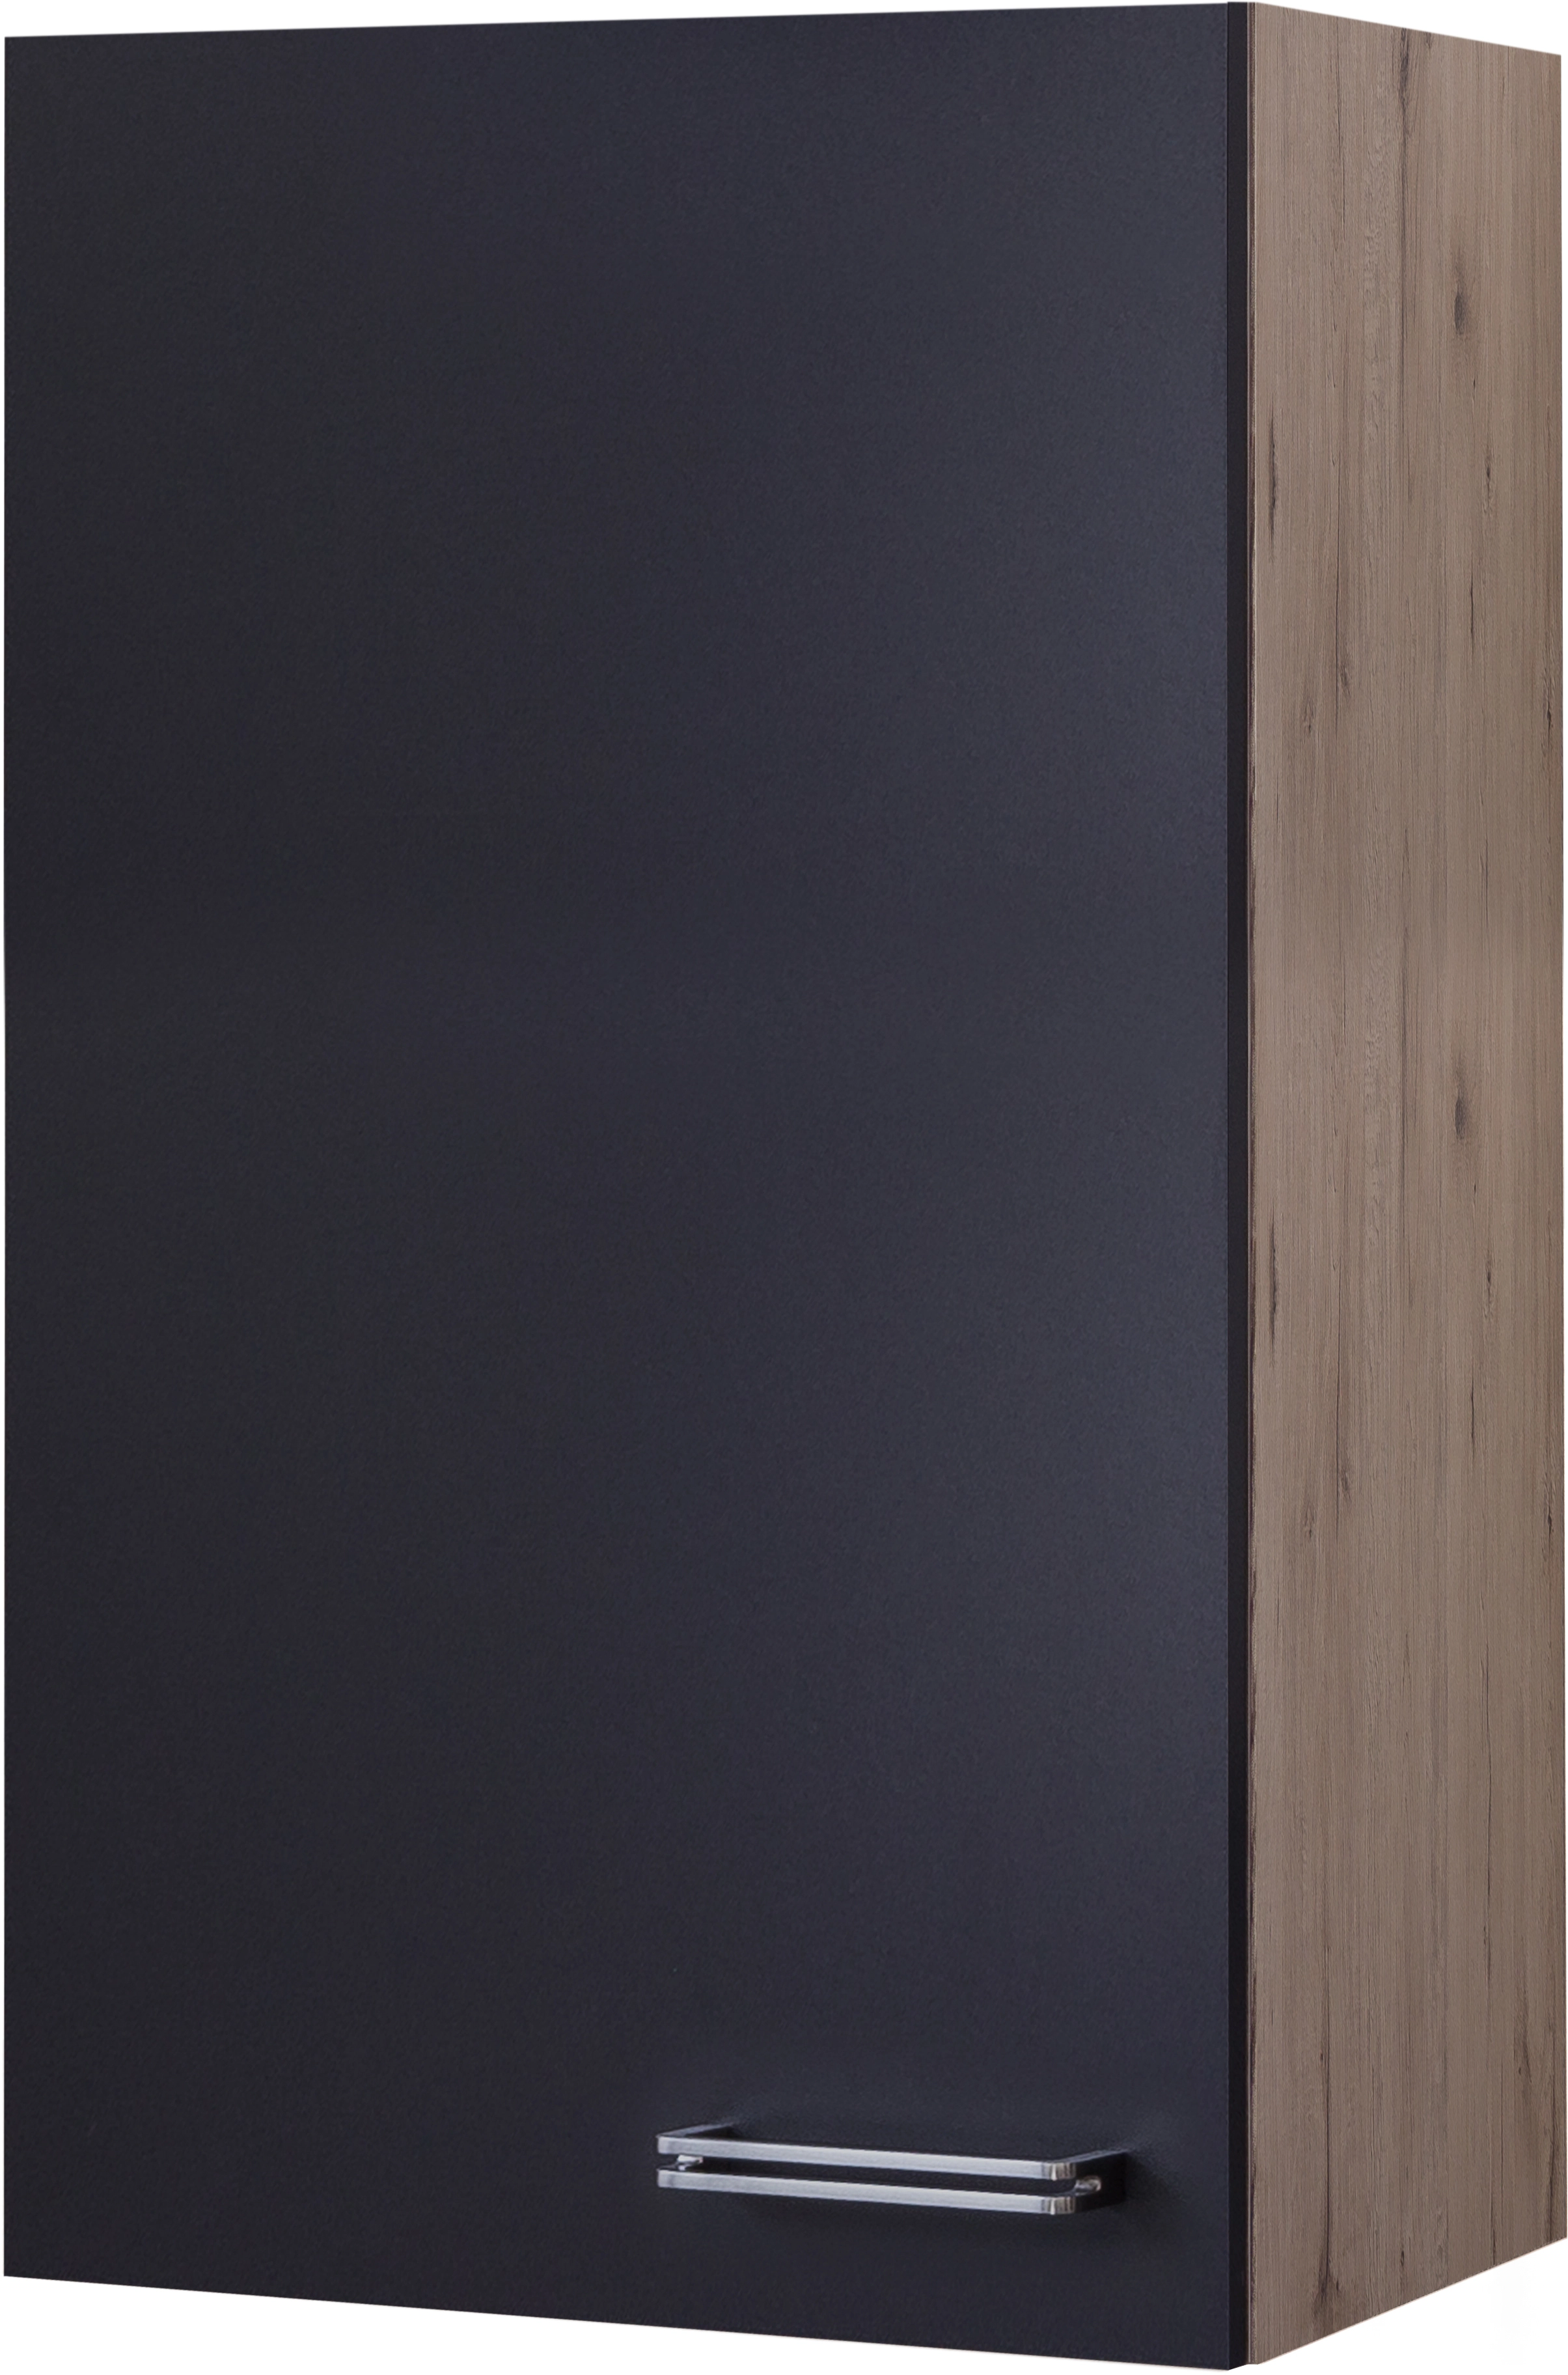 Flex-Well Exclusiv Hängeschrank groß Lara 50 x 89 cm Anthrazit-San Remo  Eiche kaufen bei OBI